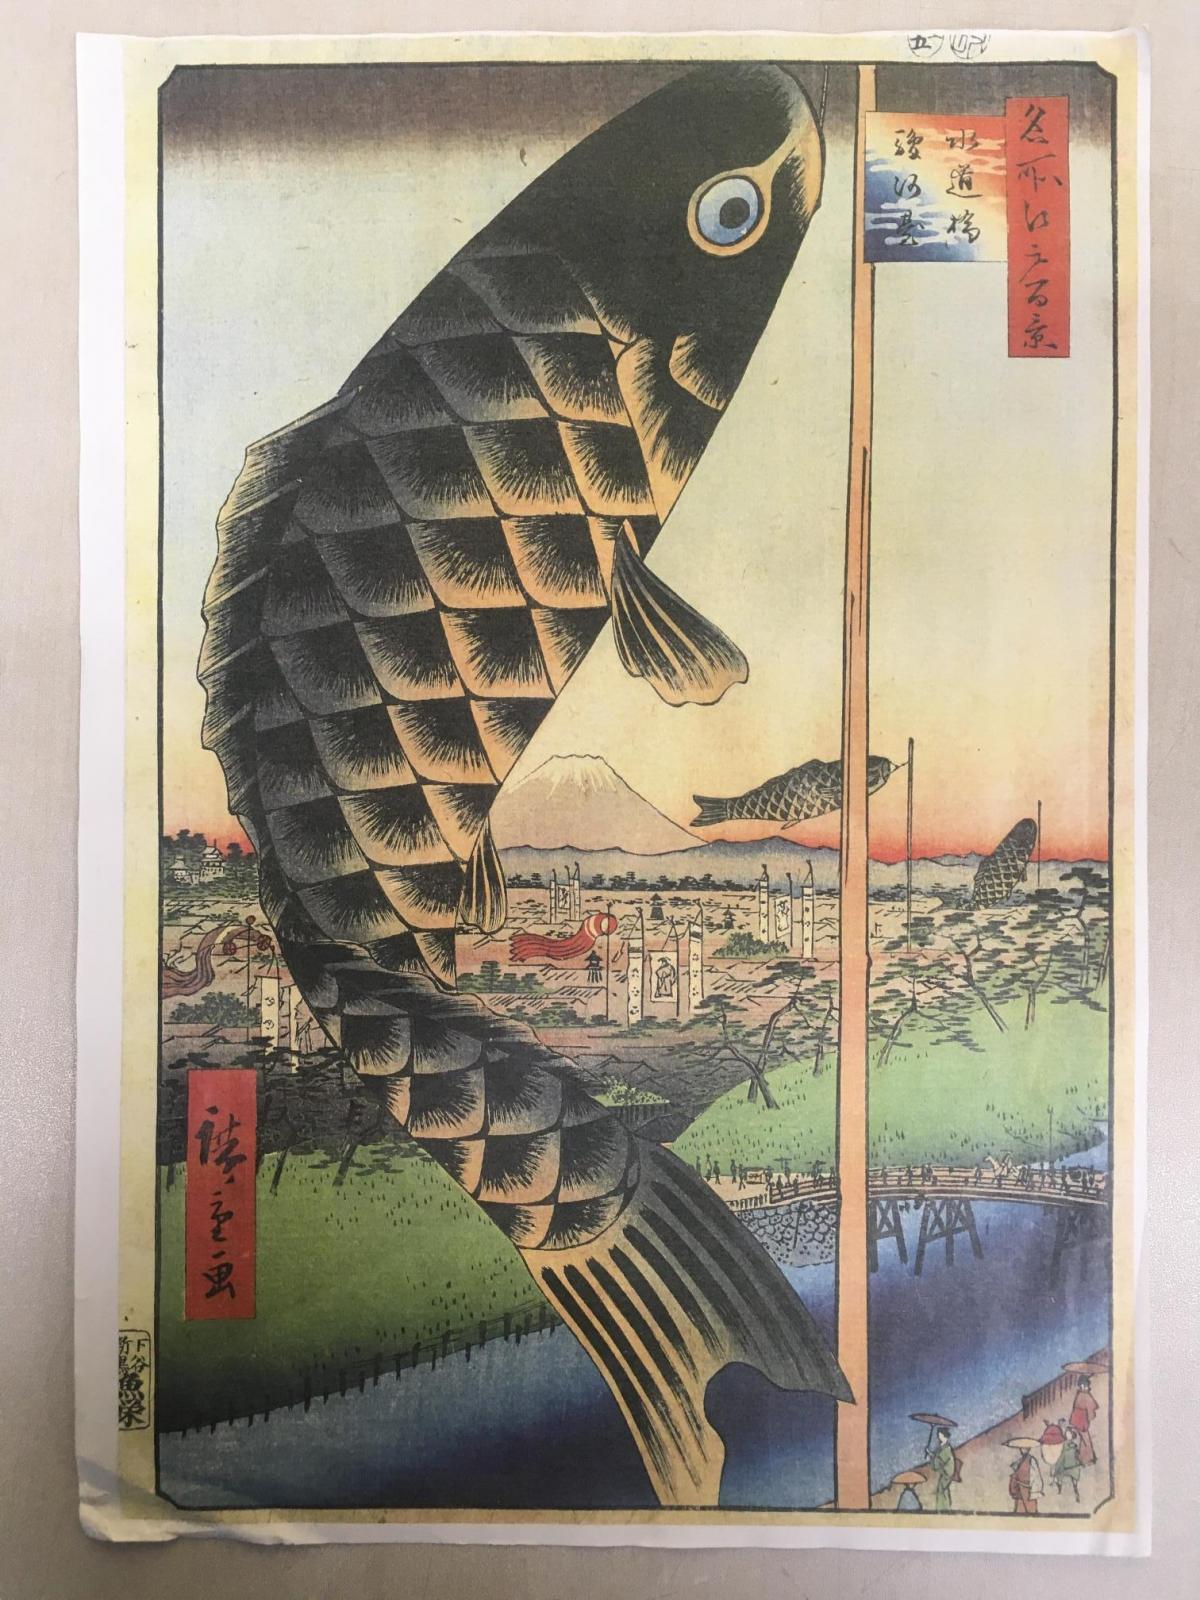 鯉のぼりの始まりは黒鯉一匹だけだった！-安藤広重の江戸の風景が物語る鯉のぼりの始まり-